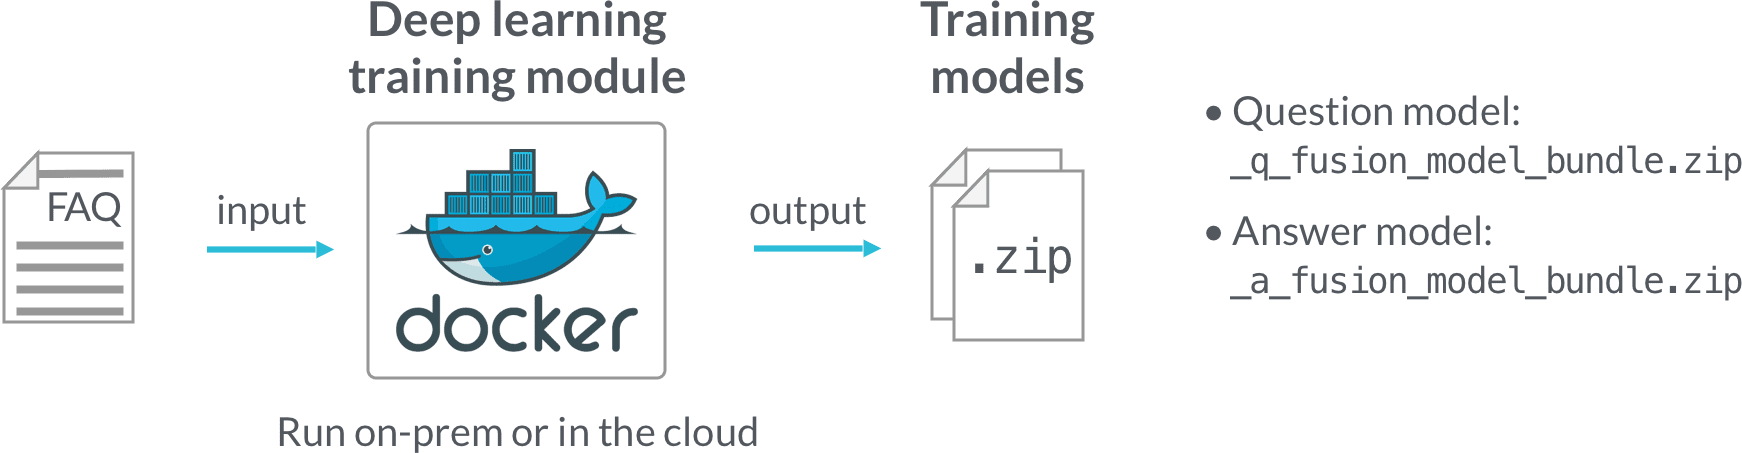 FAQ model training